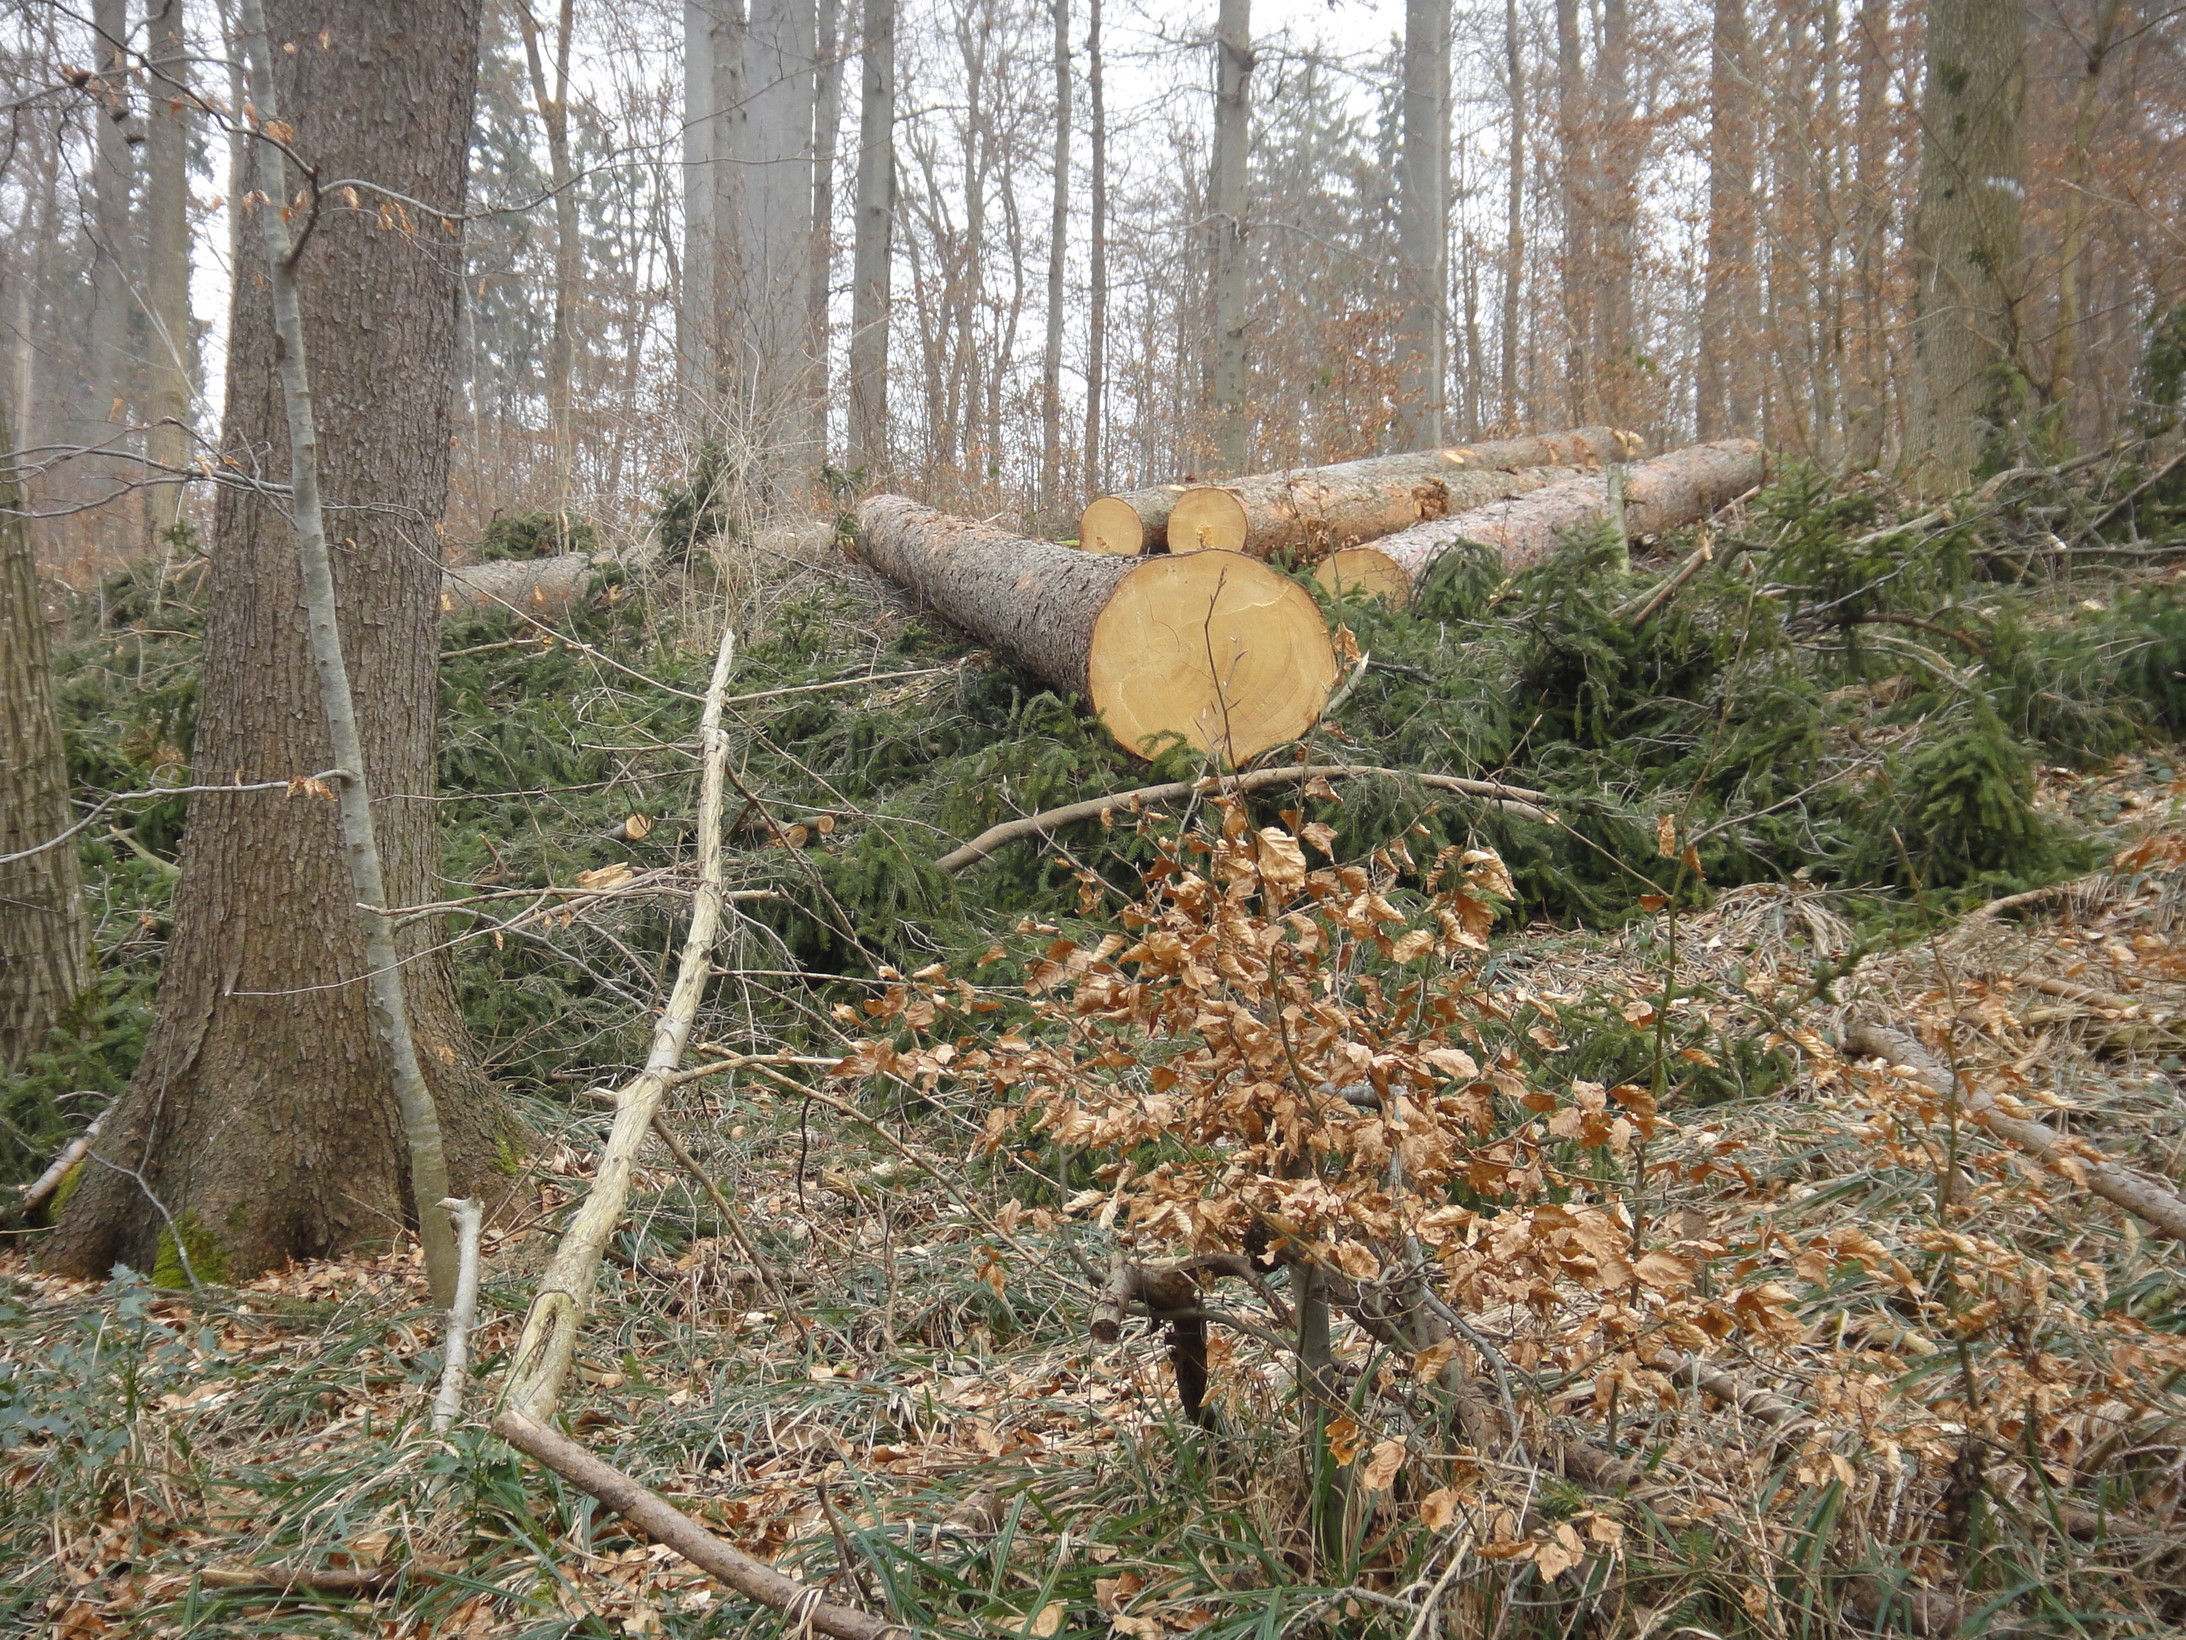 "Wenig Verständnis habe ich für Beschimpfungen der Waldarbeiter - sie machen ihren Job." Der Zürcher Adlisberg am 13.2.2011